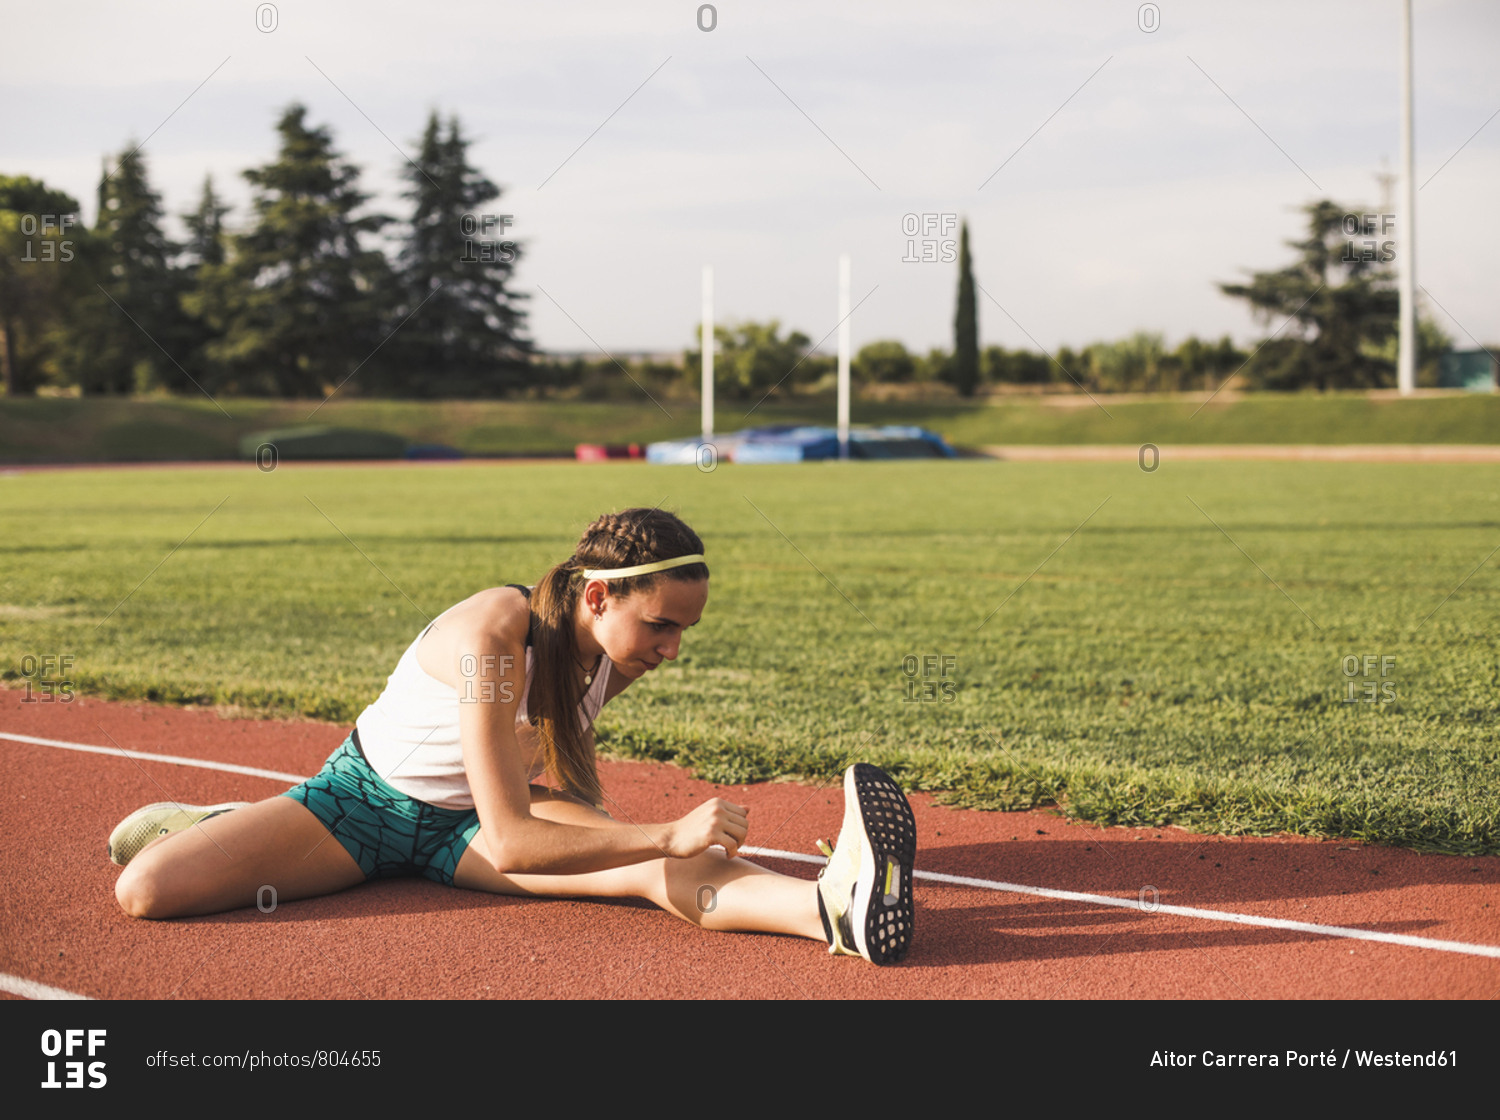 Female athlete doing warm-up exercises on tartan track